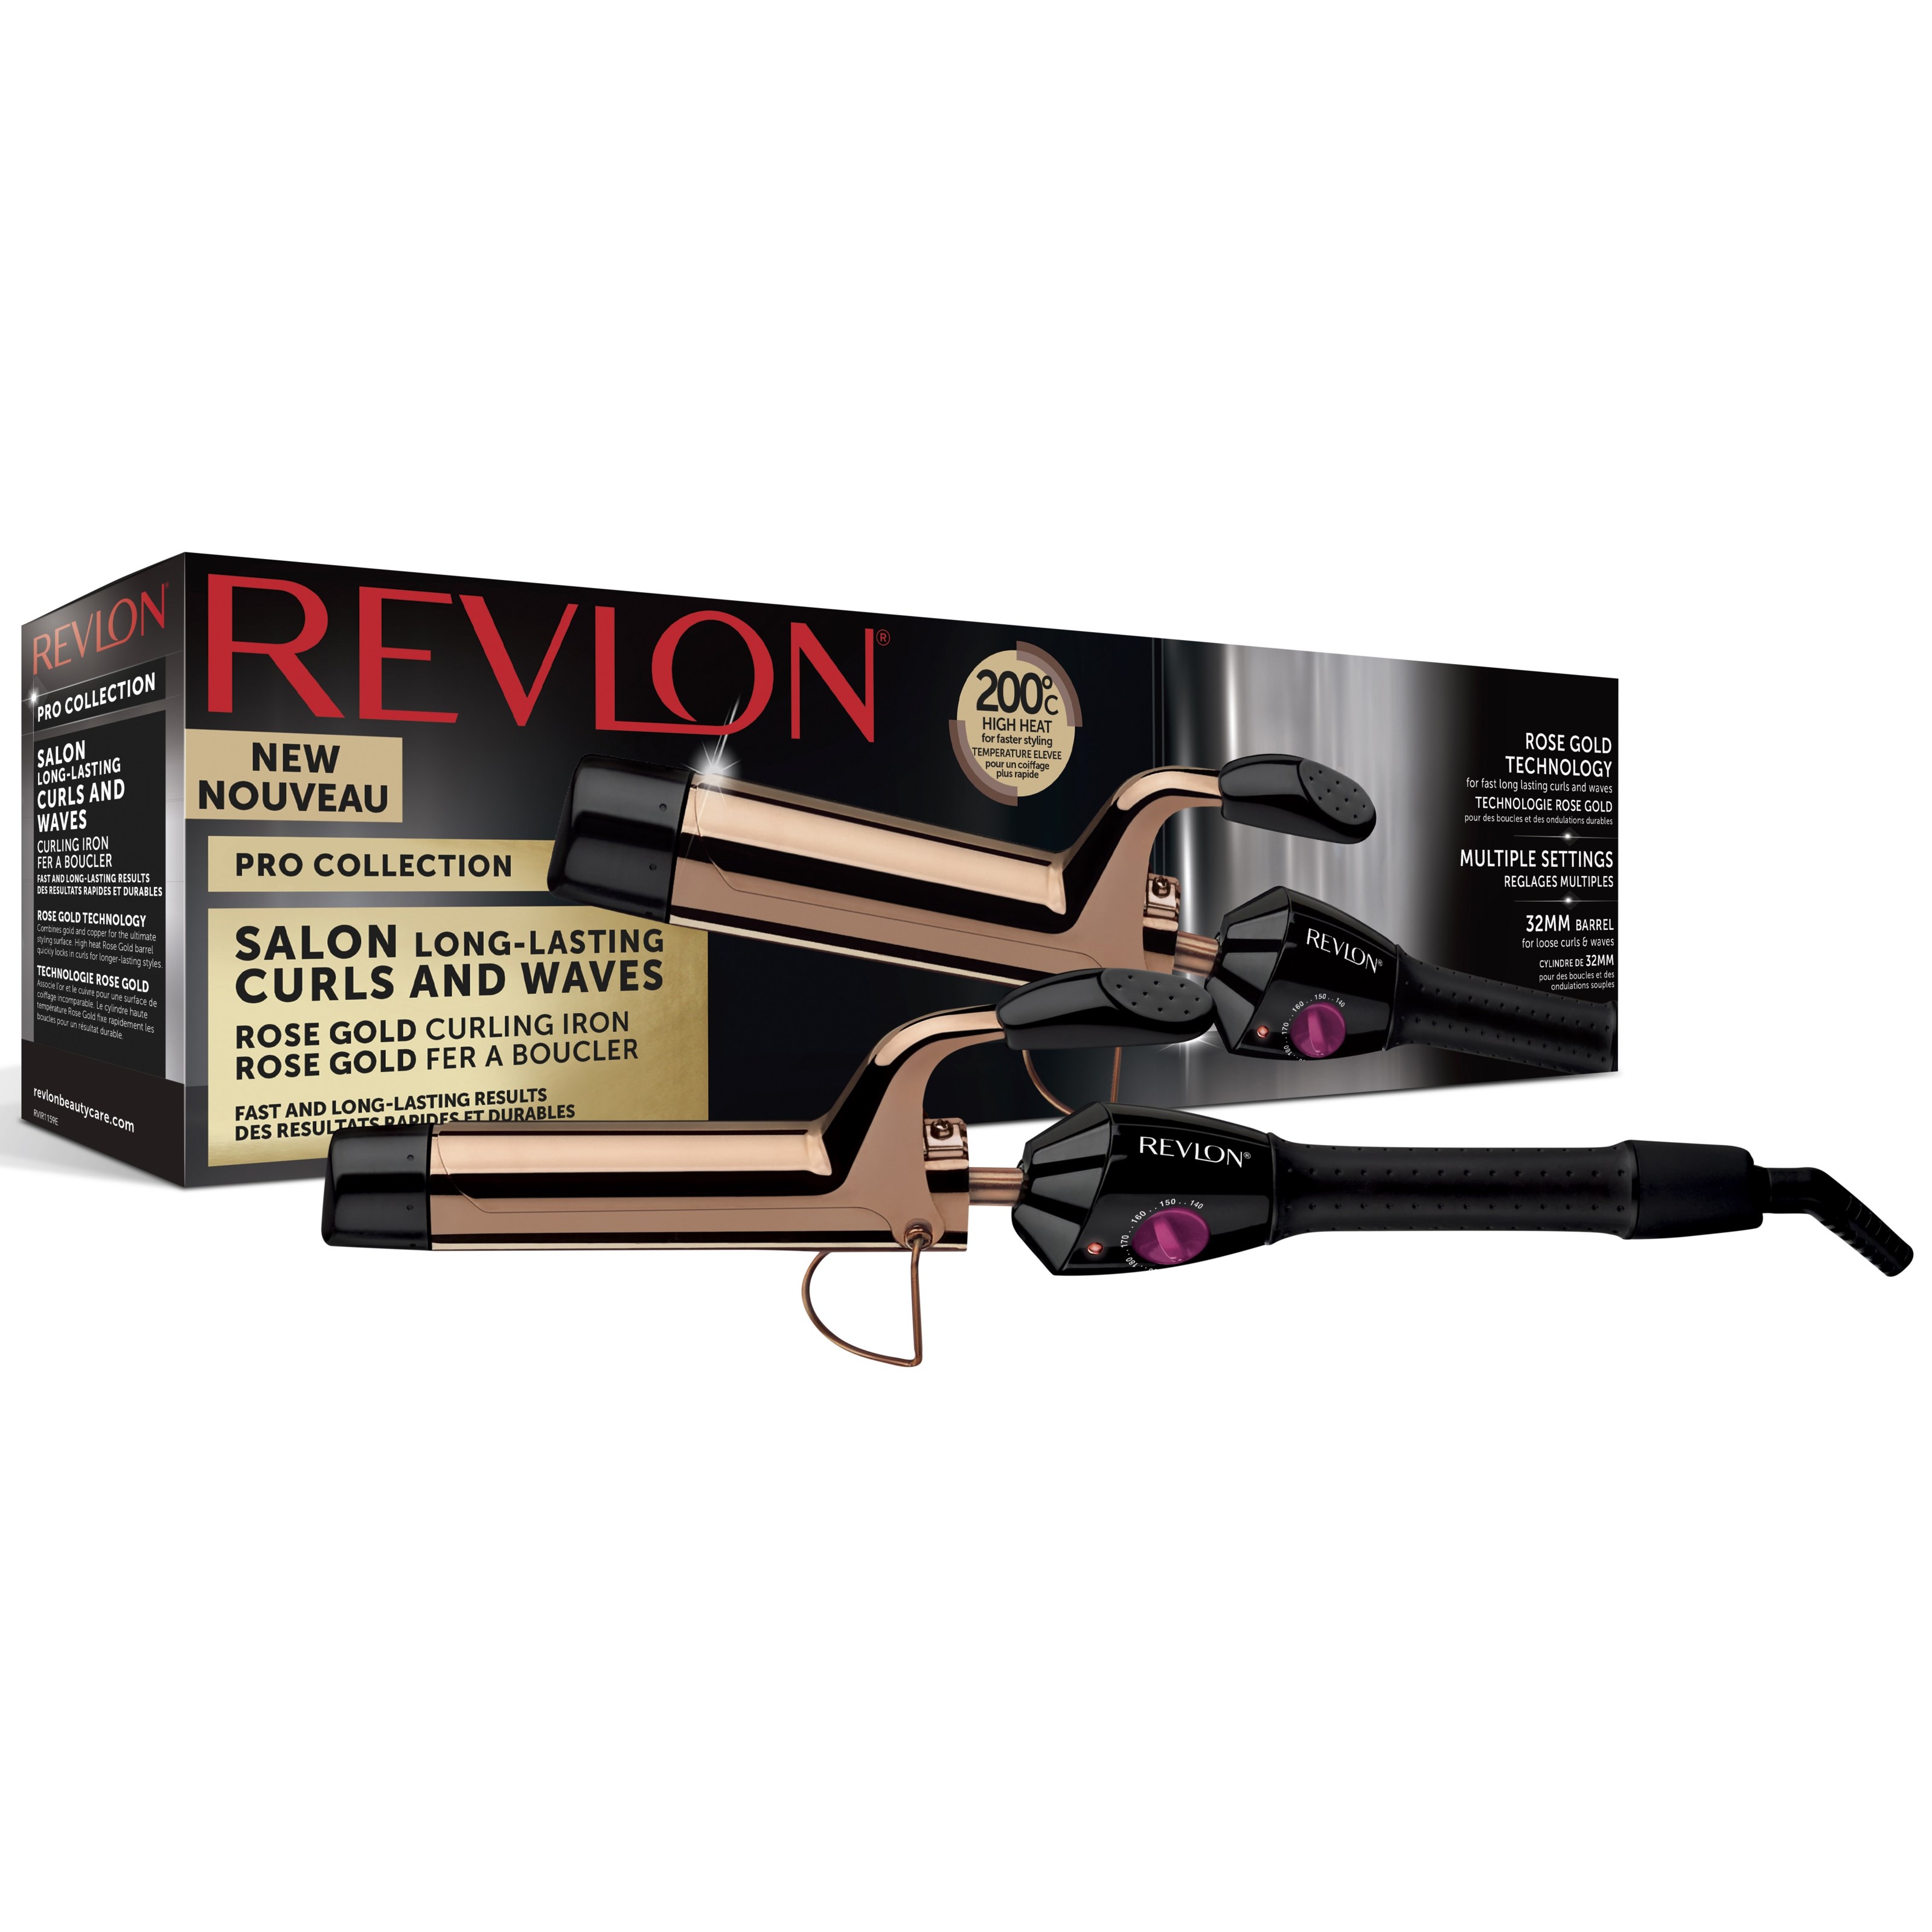 Läs mer om Revlon Tools Revlon Salon Long-lasting Curls and Waves Rose Gold lockt